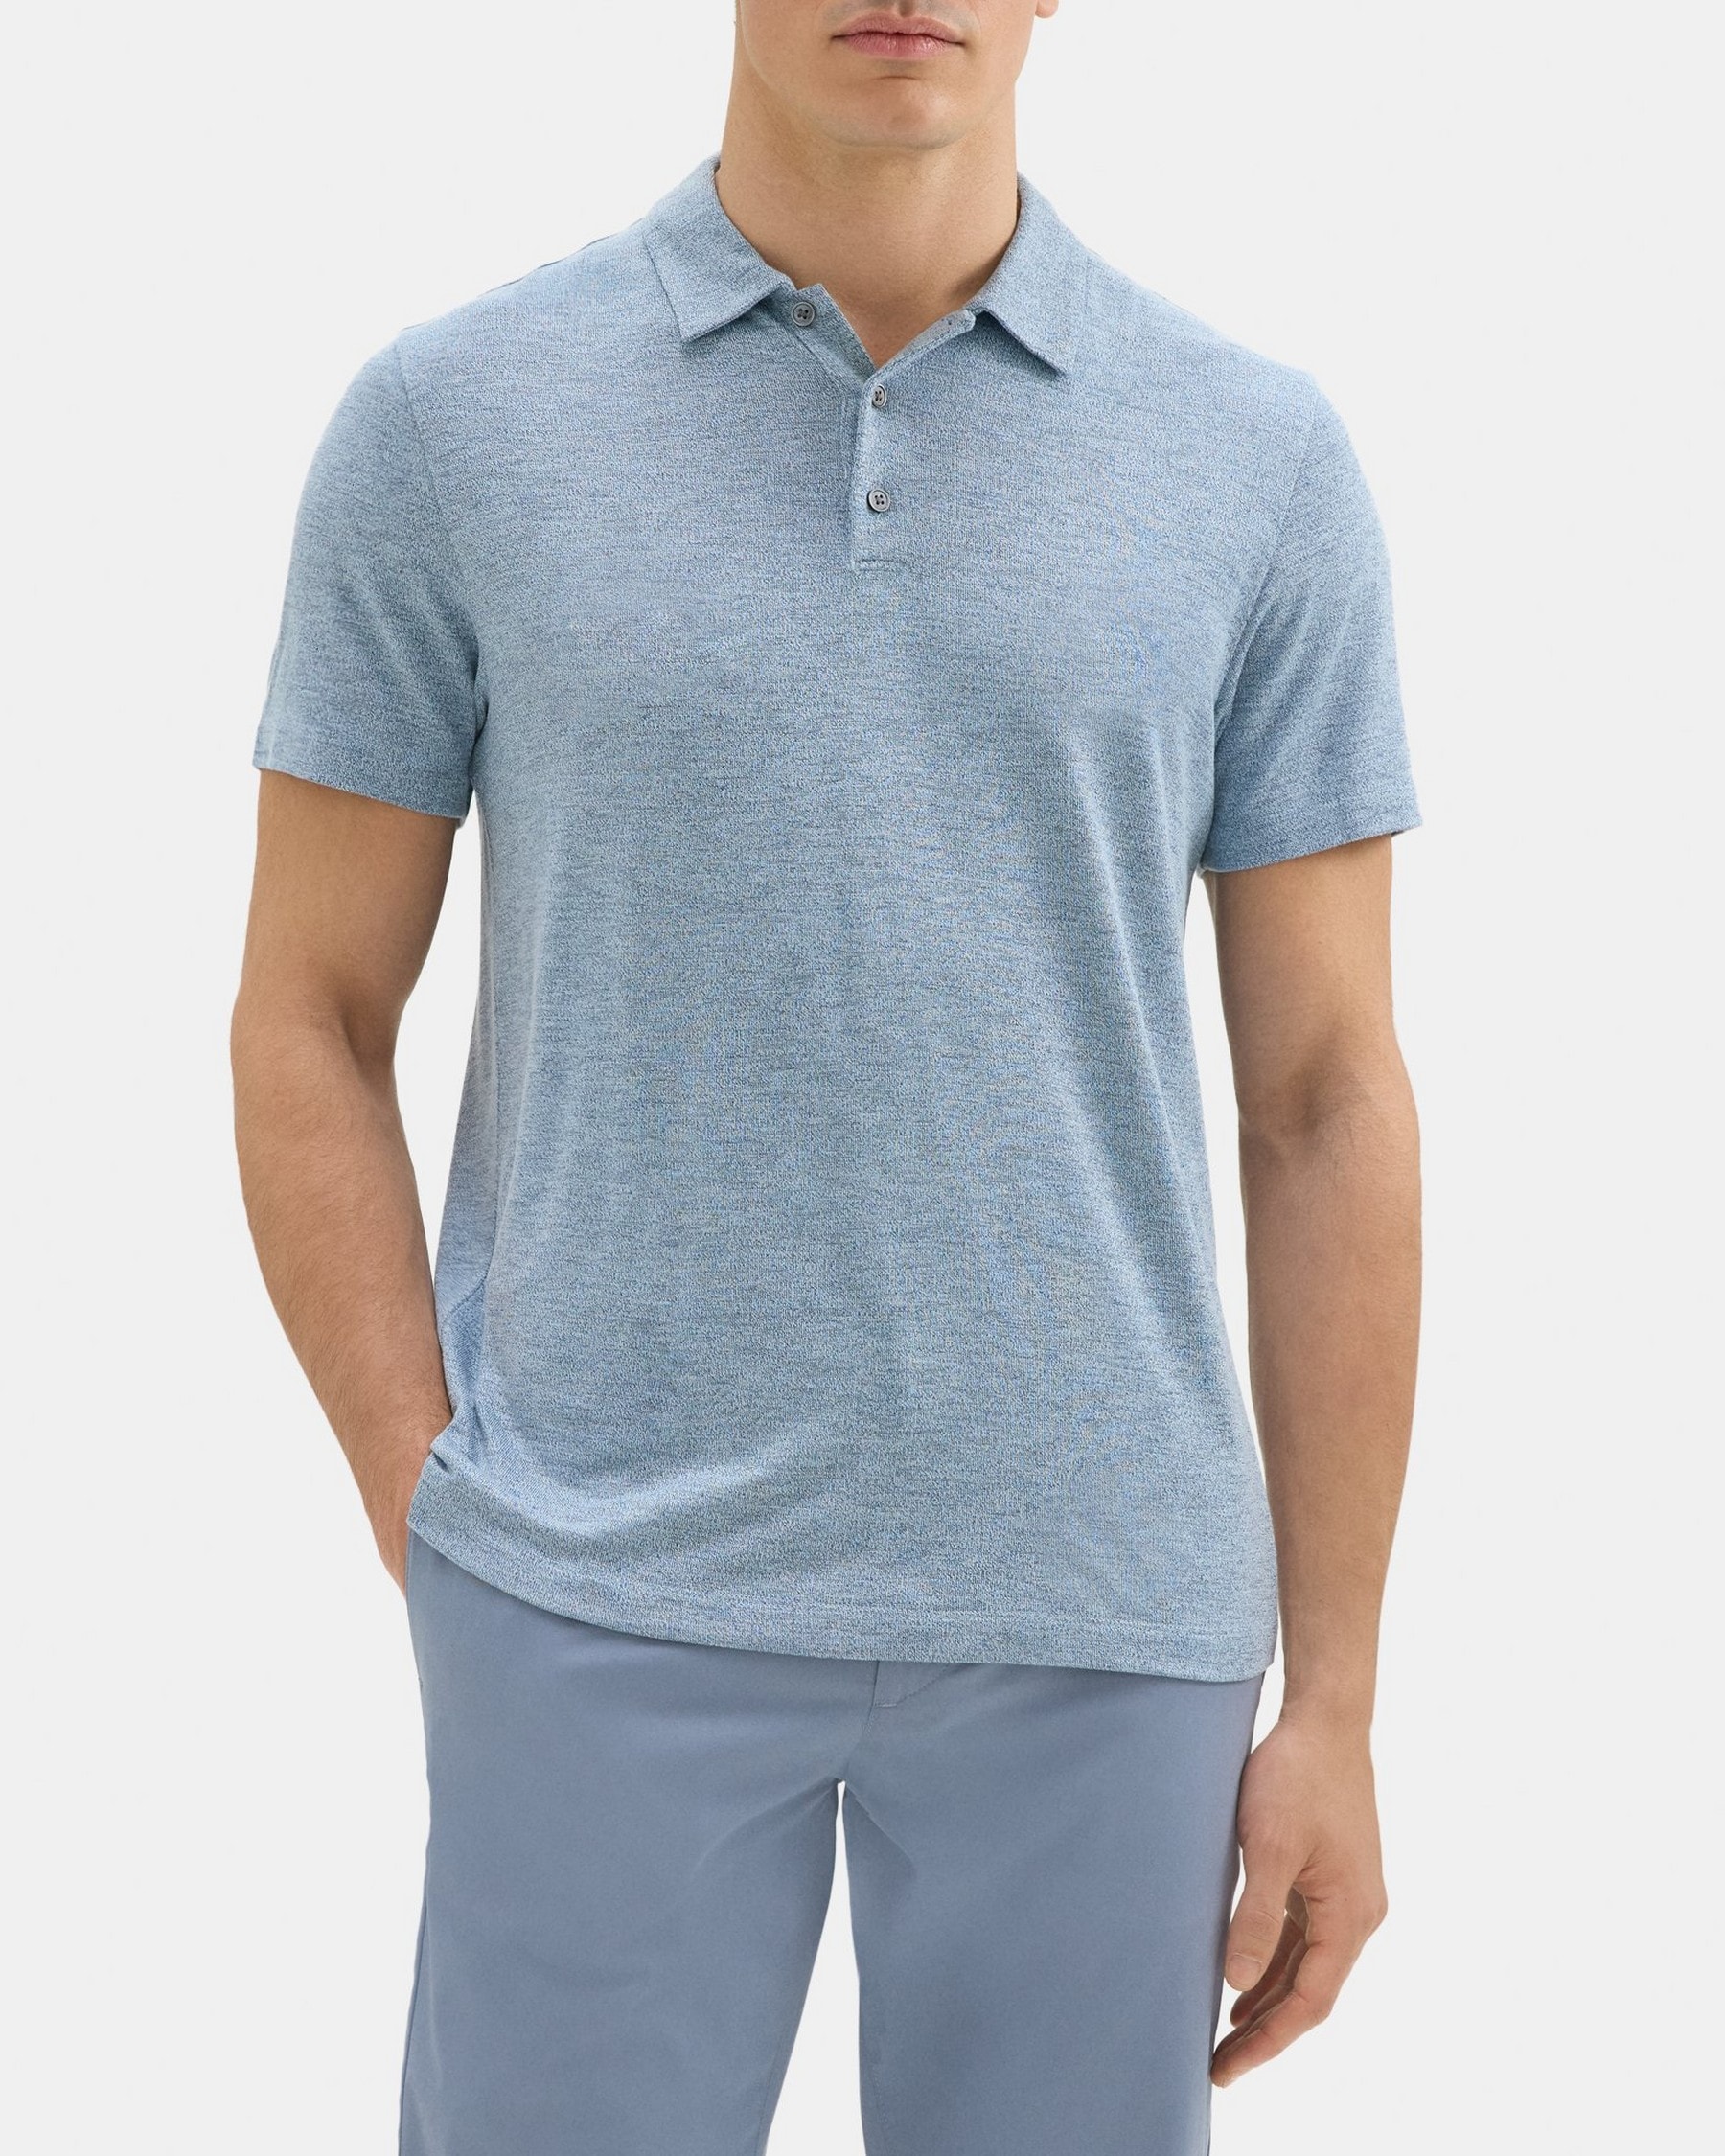 띠어리 Theory Polo Shirt in Modal Blend Jersey,GLACIER BLUE/SPELLBOUND